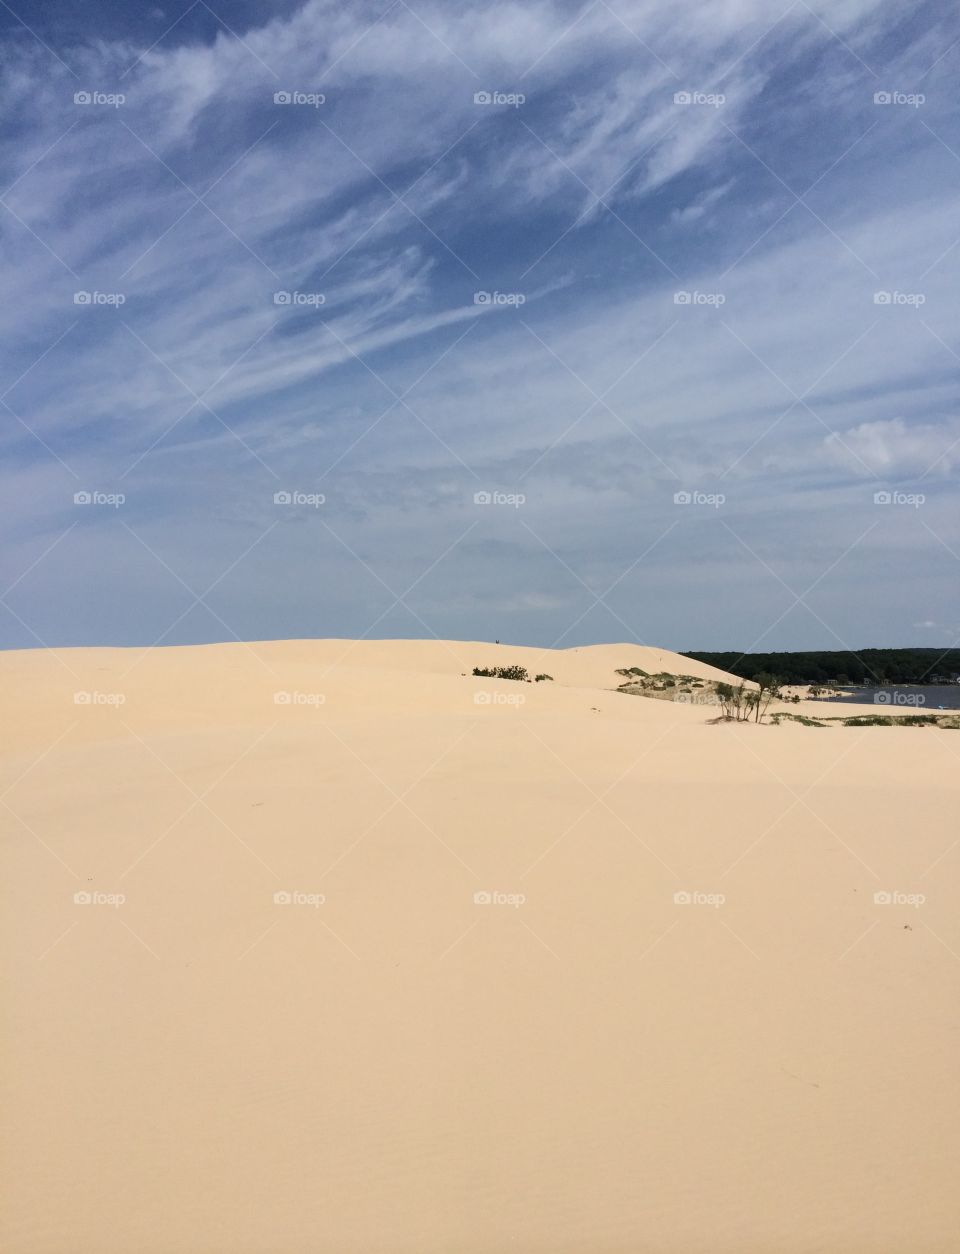 Silver lake sand dunes Michigan 